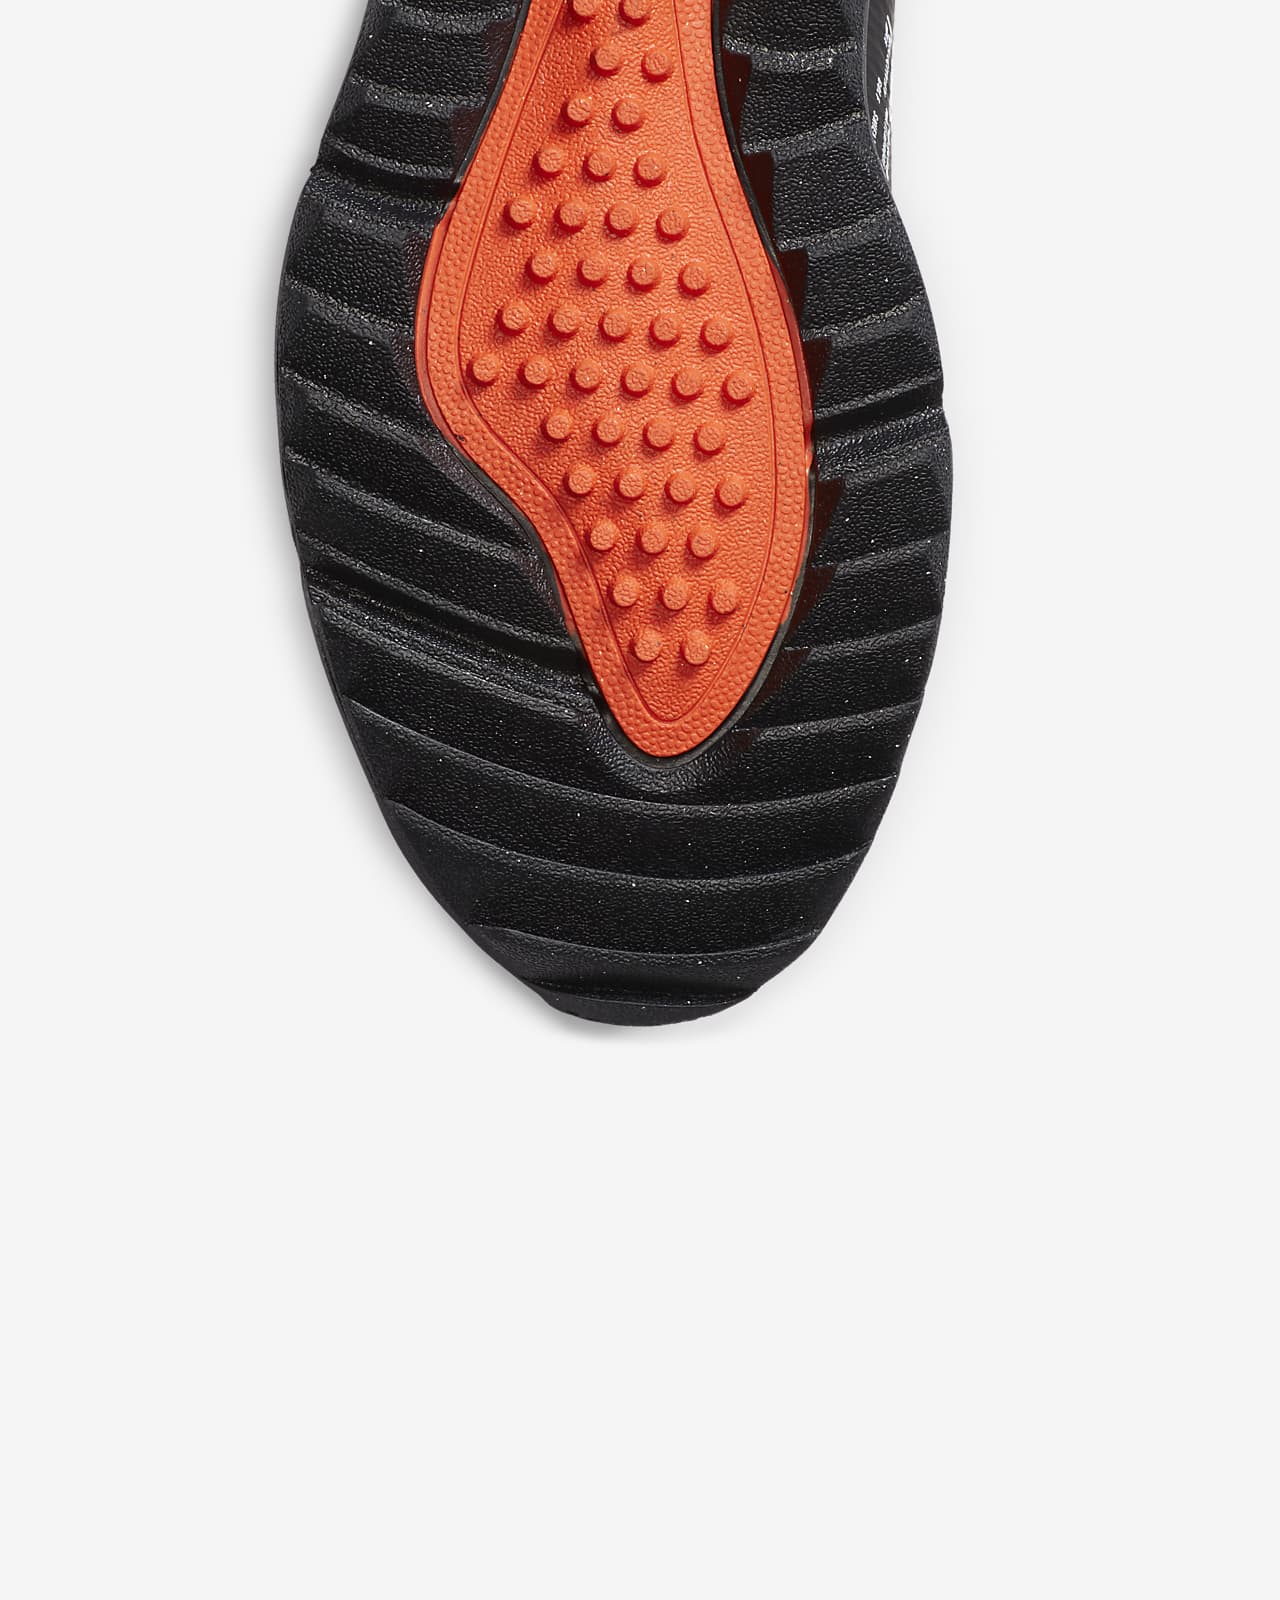 Nike Air Max 270 G Shield Golf Shoes